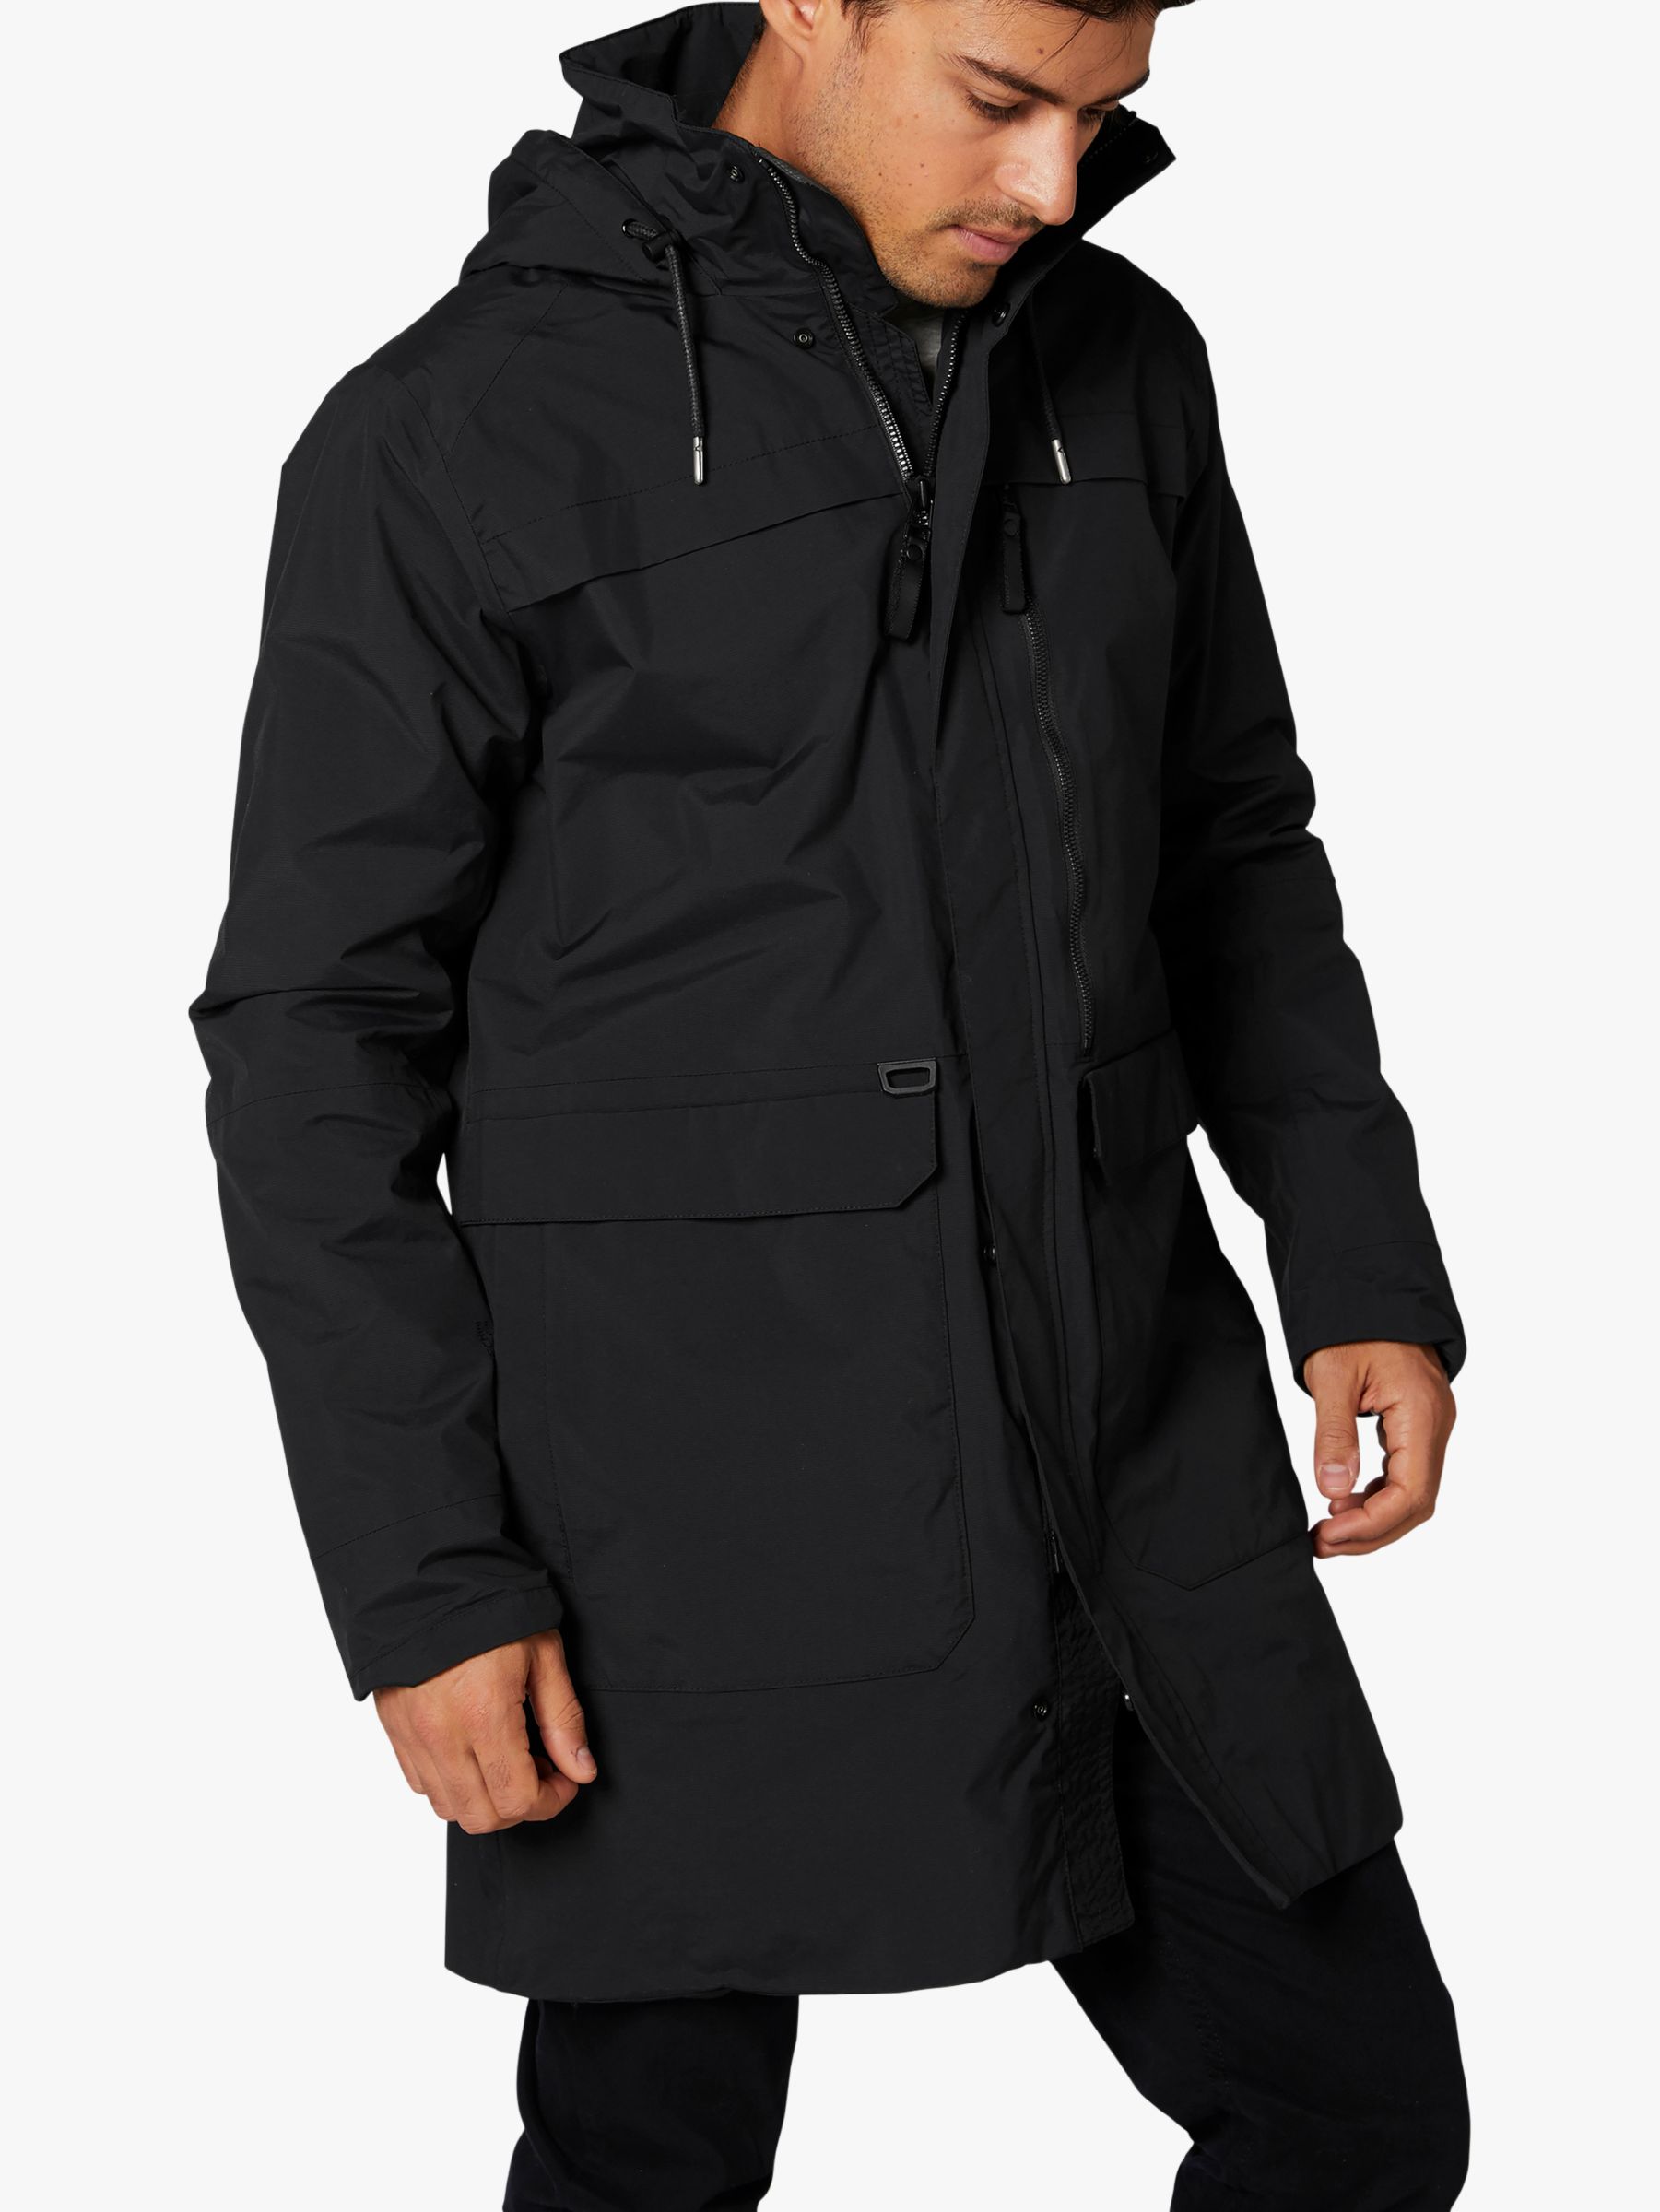 Long Black Waterproof Jacket | vlr.eng.br